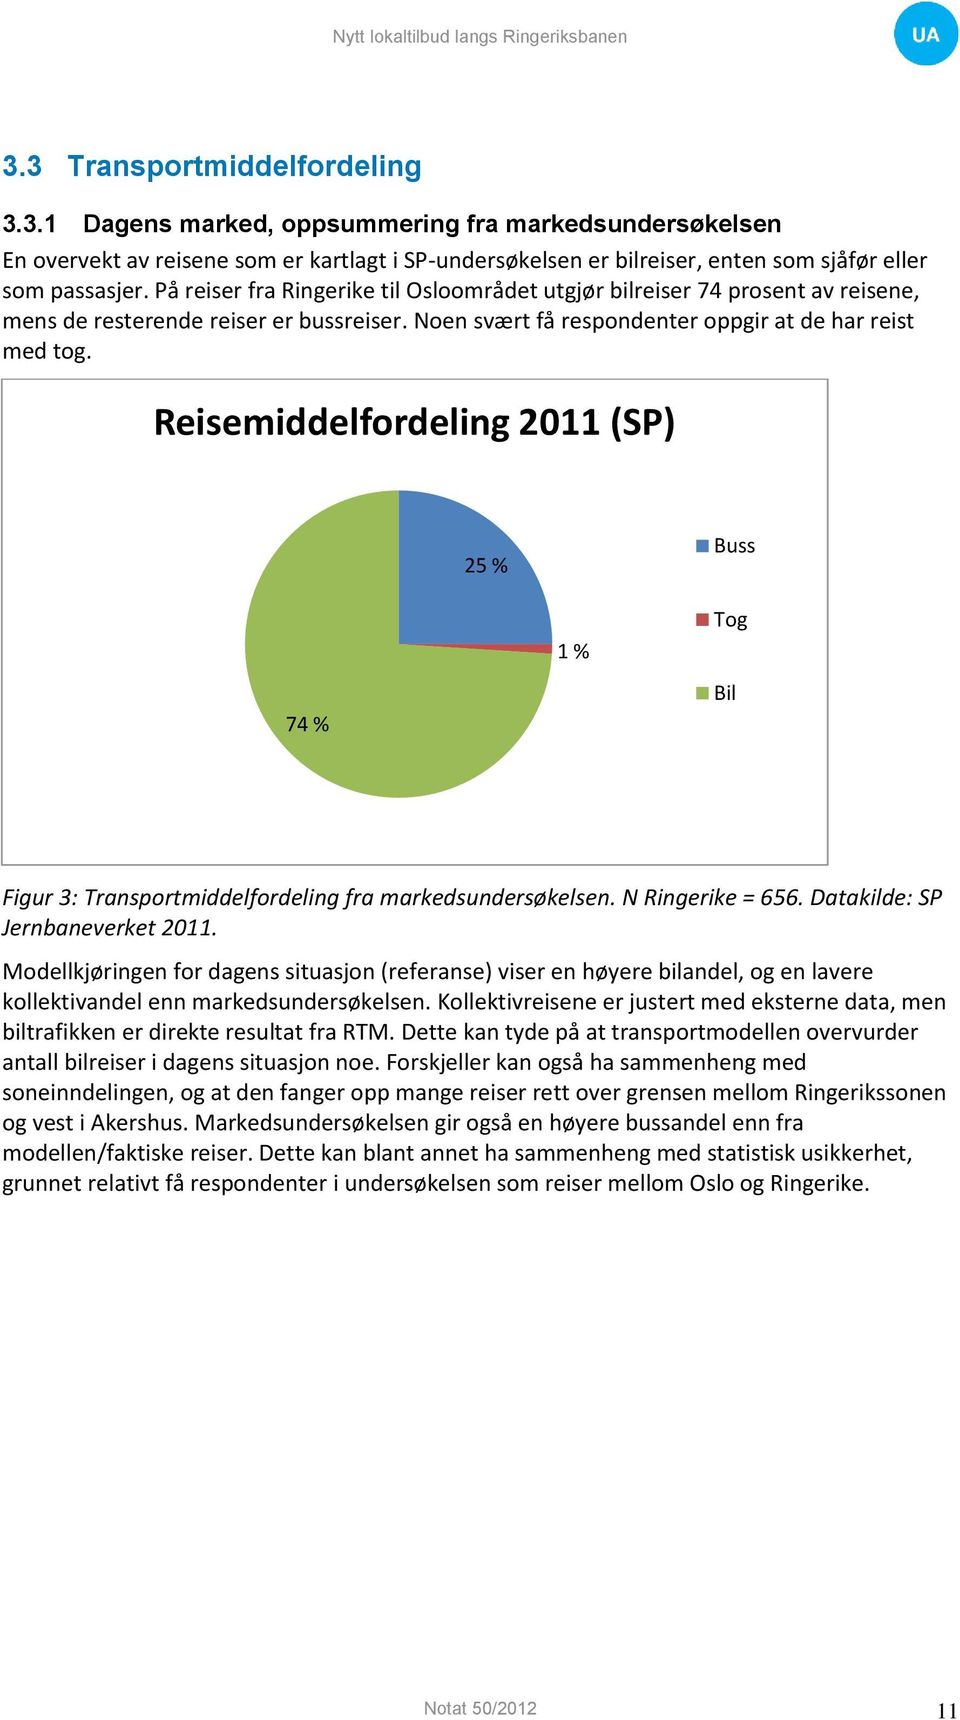 Reisemiddelfordeling 2011 (SP) 25 % Buss 1 % Tog 74 % Bil Figur 3: Transportmiddelfordeling fra markedsundersøkelsen. N Ringerike = 656. Datakilde: SP Jernbaneverket 2011.